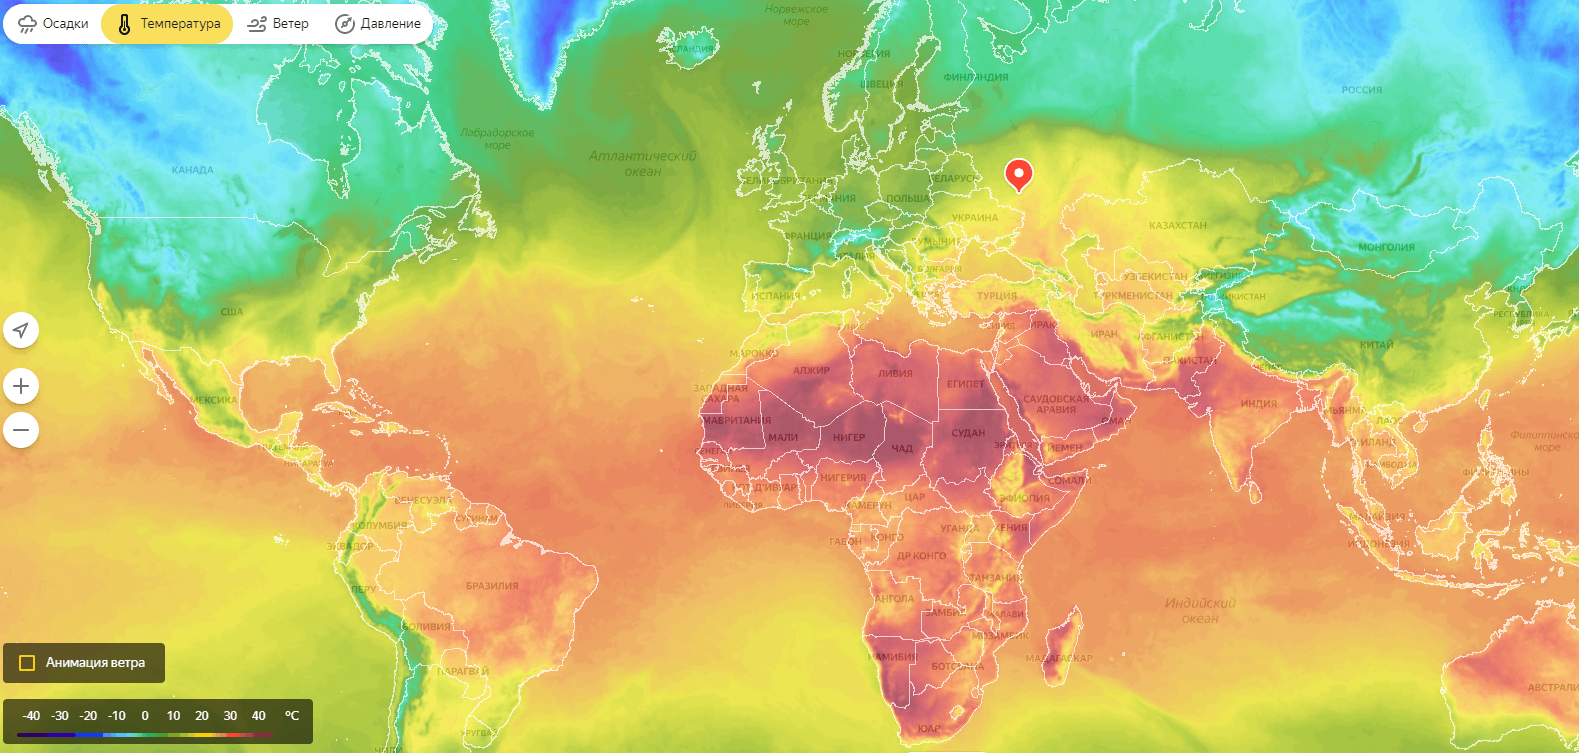 Температура на карте. Карта температур. Тепловая карта. Карта температуры мира. Температурная карта планеты.